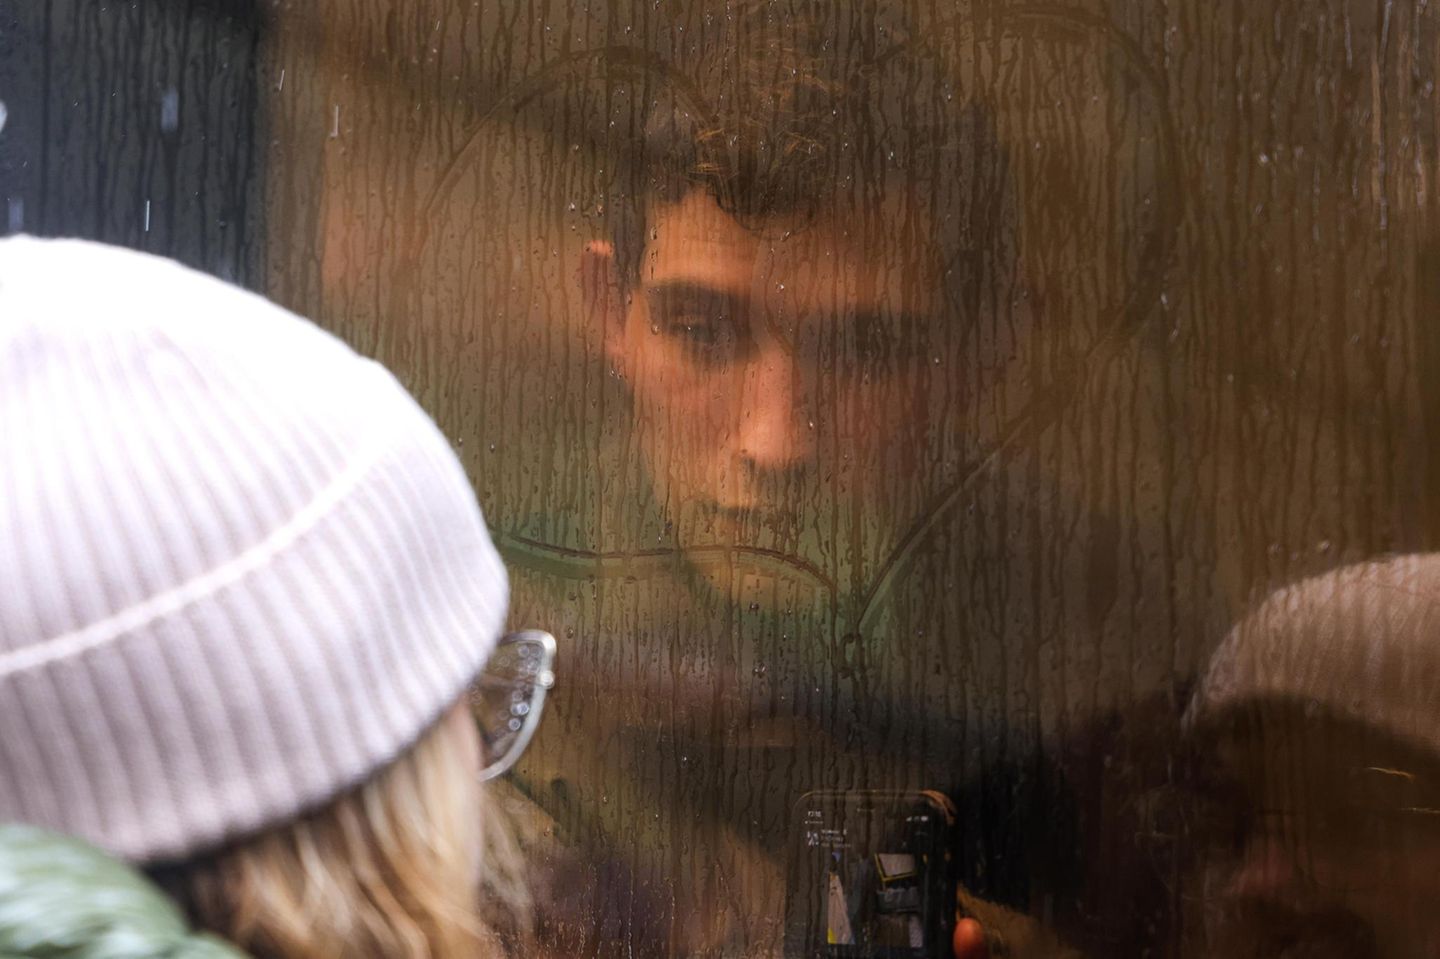 Ein junger Rekrut schaut in Moskau durchs Fenster des Busses zu seiner Freundin